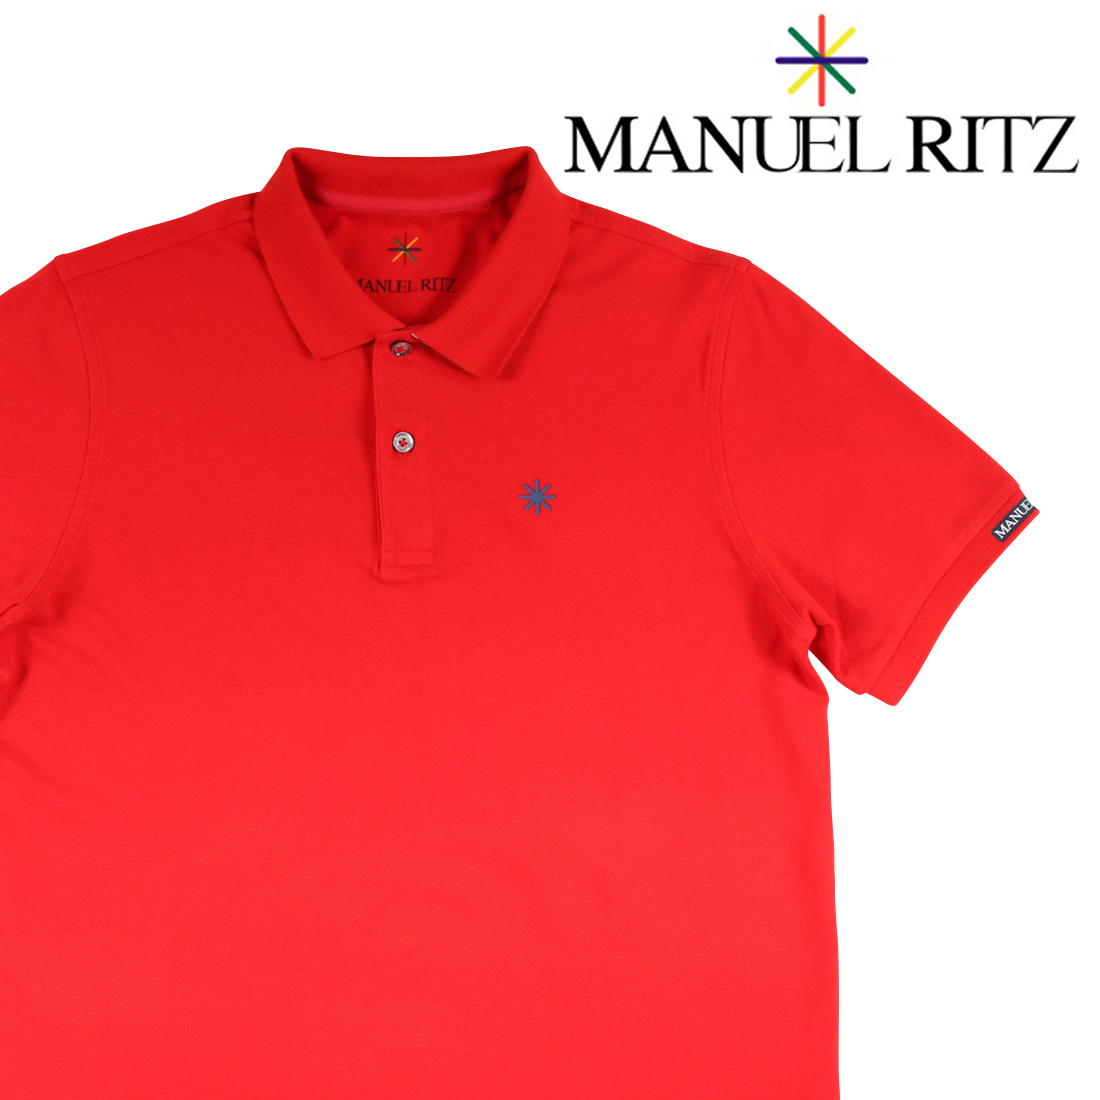 Manuel Ritz（マニュエル リッツ） 半袖ポロシャツ 2632M001 レッド L 